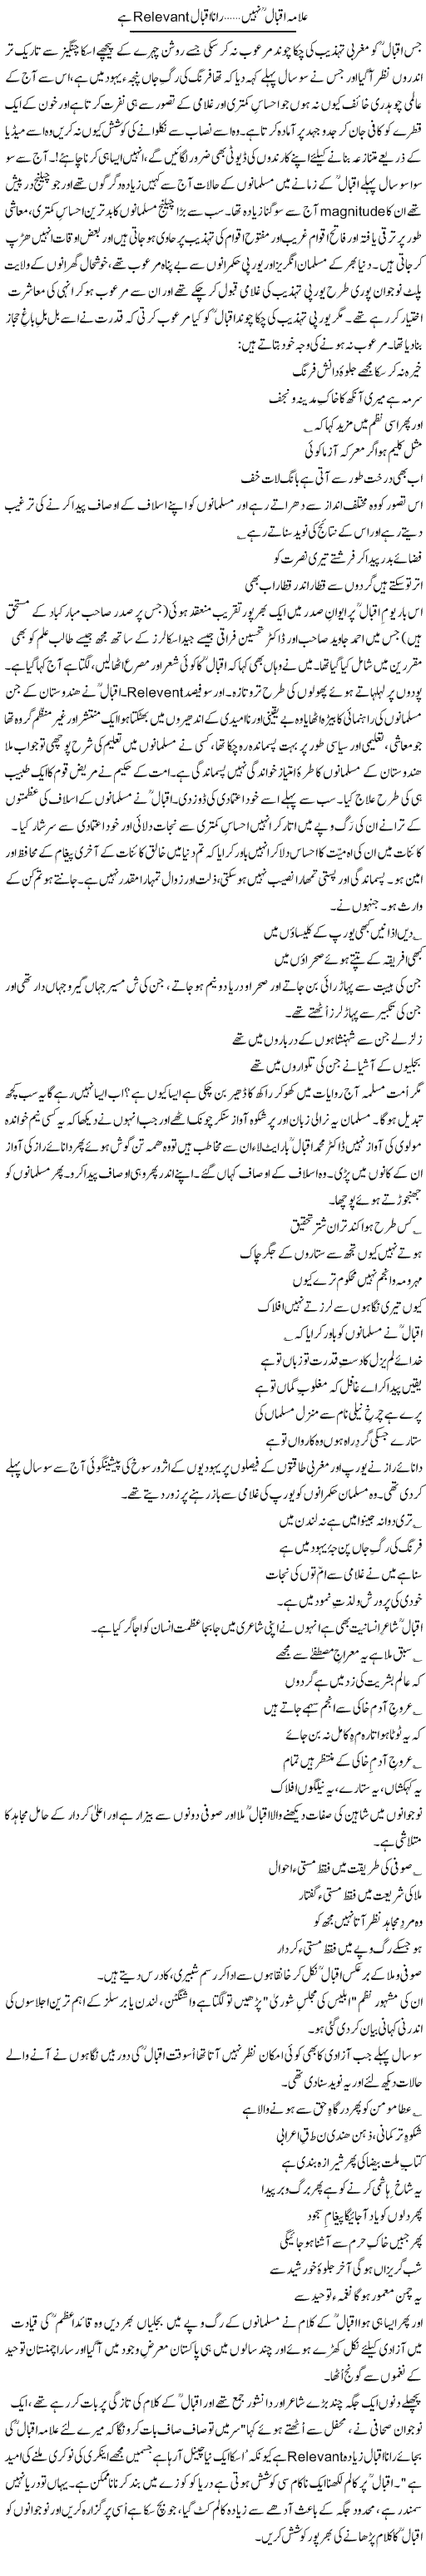 Allama Iqbal Nahi, Rana Iqbal Relevant Hai | Zulfiqar Ahmed Cheema | Daily Urdu Columns